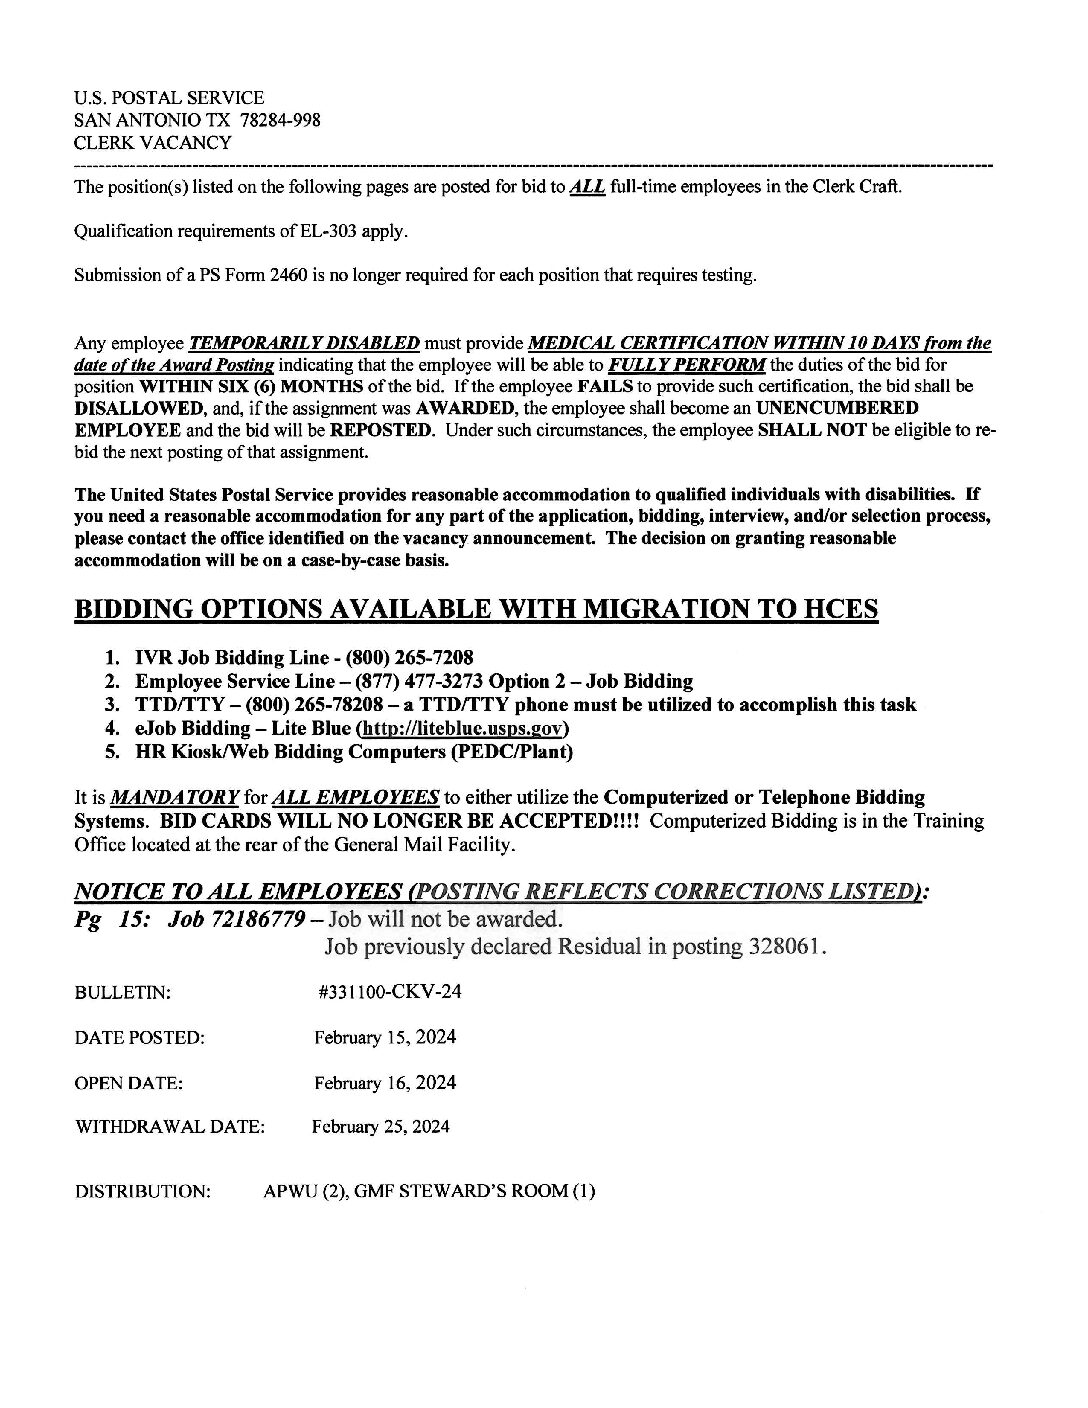 E-Flash Clerk Job Vacancy Bulletin 2/16/2024 - 